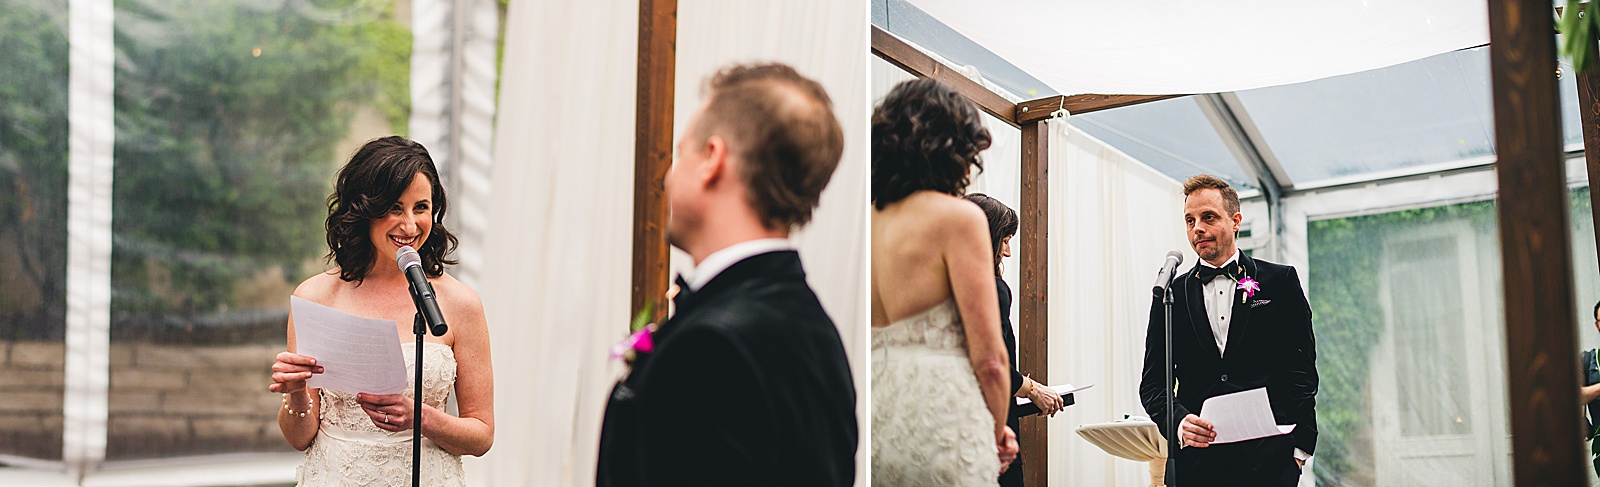 39 vows during wedding - Chicago Illuminating Company Wedding // Samantha + Jeremy